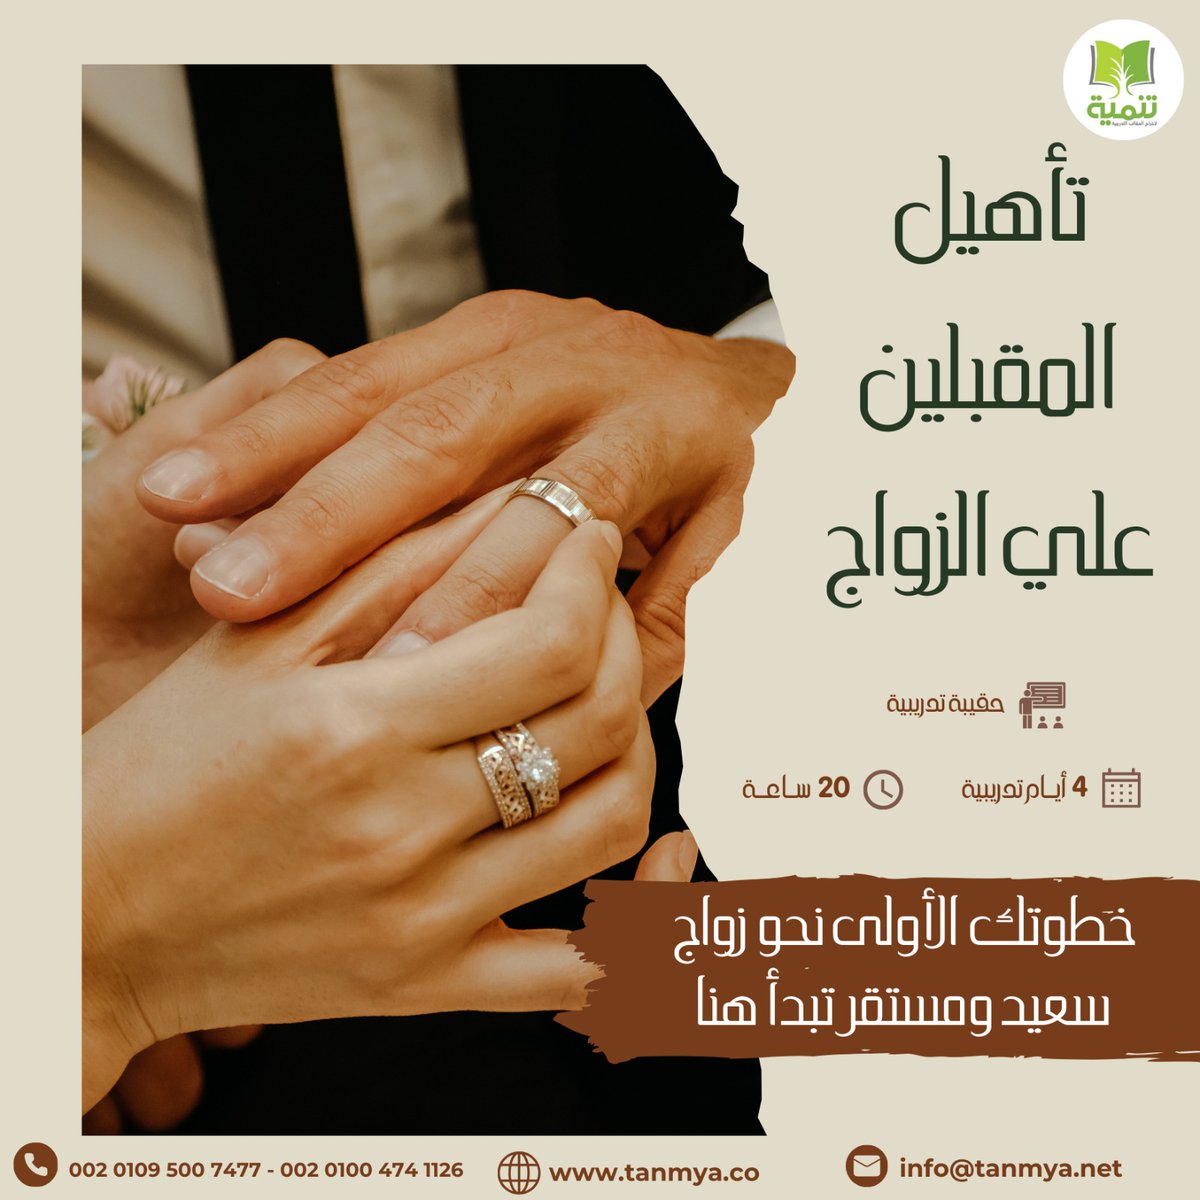 هل أنتم على أعتاب مرحلة جديدة ومثيرة في حياتكم؟
نقدم لكم الفرصة للانضمام إلى برنامج تأهيل المقبلين على الزواج.
لمزيد من التفاصيل وللإطلاع علي الحقيبة التدريبية تواصلوا معنا من خلال الرابط التالي:
lnkd.in/dmKQEU9r 
او الرابط التالي:
lnkd.in/ds7X6SnF
#التدريب #سعوديه